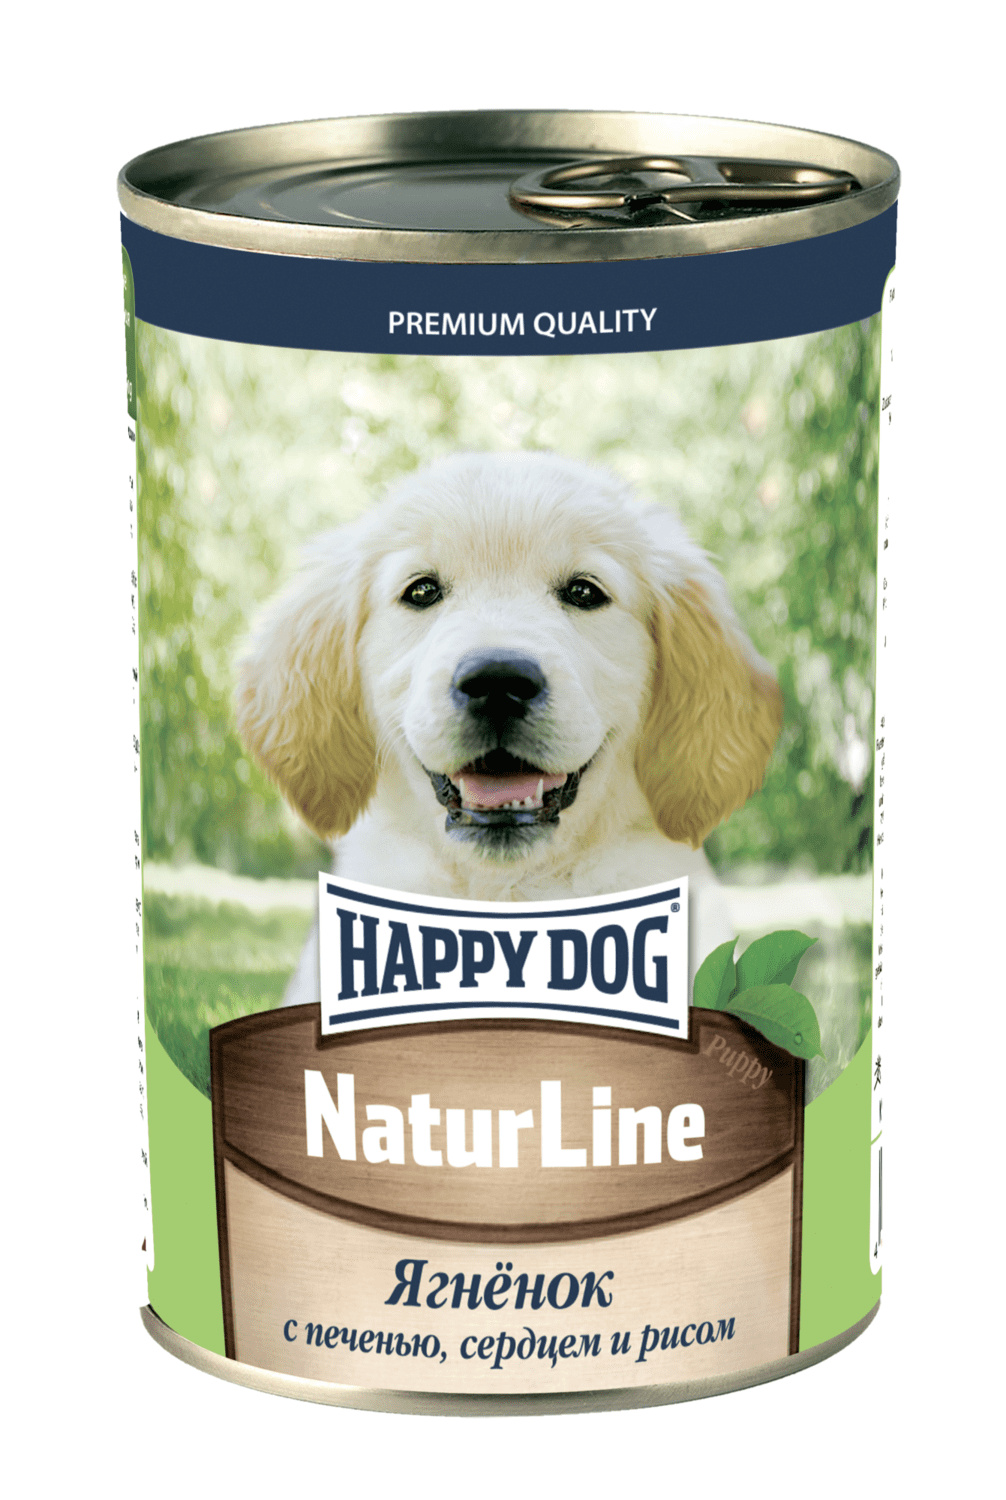 Happy dog Happy dog консервы для щенков с аппетитным ягненком, печенью, сердцем и рисом (410 г) цена и фото